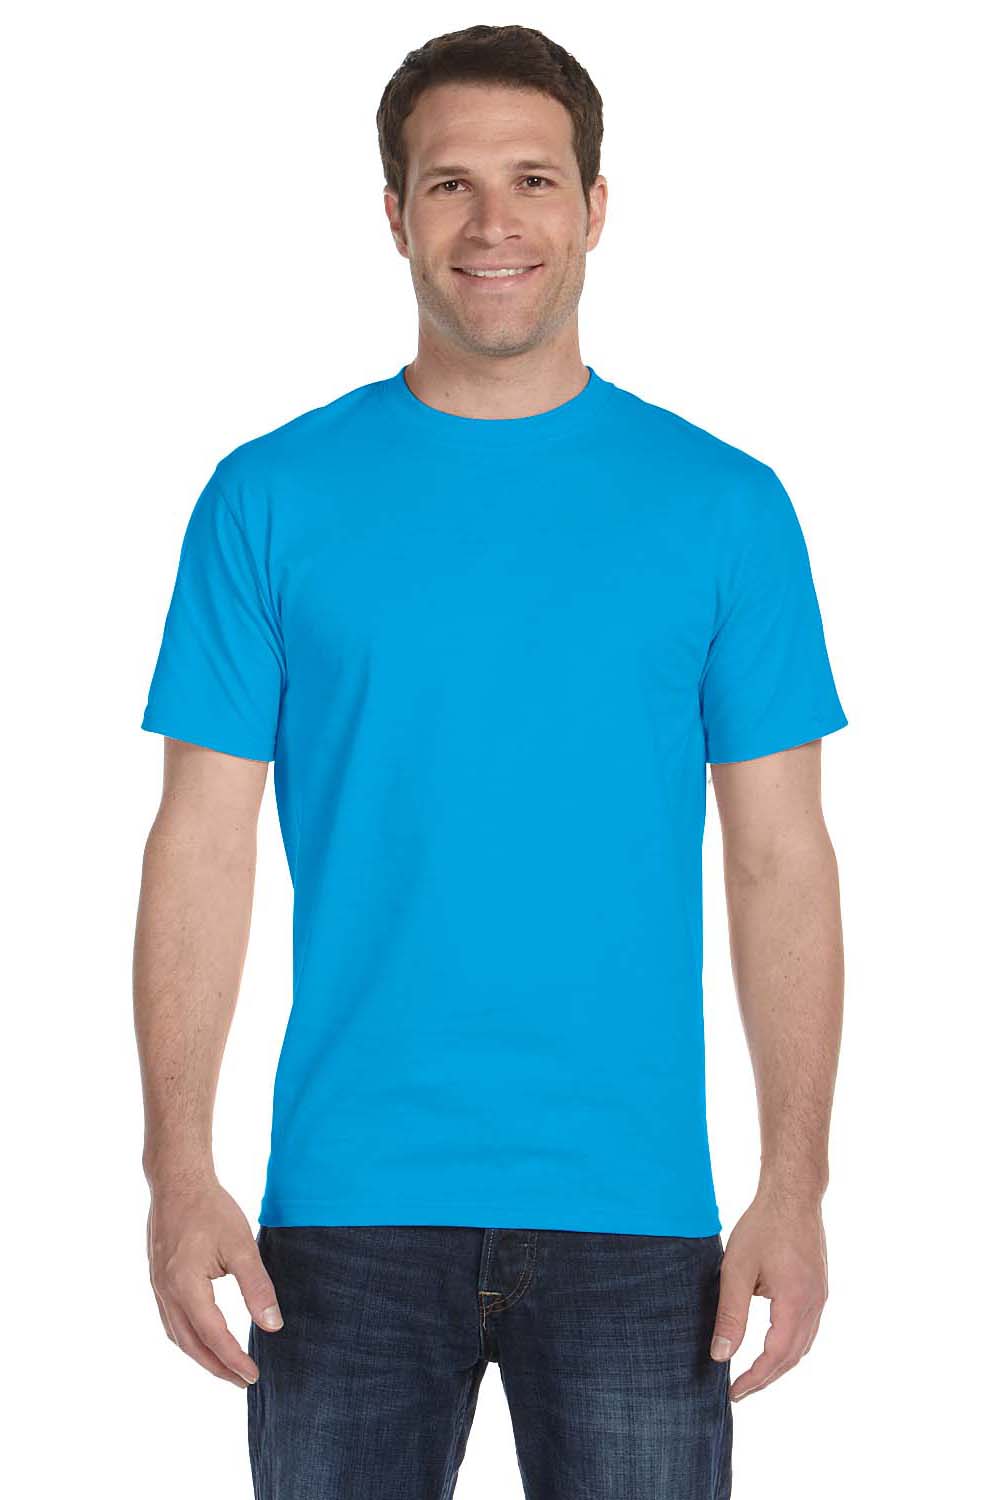 Gildan G800 Mens DryBlend Moisture Wicking Short Sleeve Crewneck T-Shirt Sapphire Blue Front